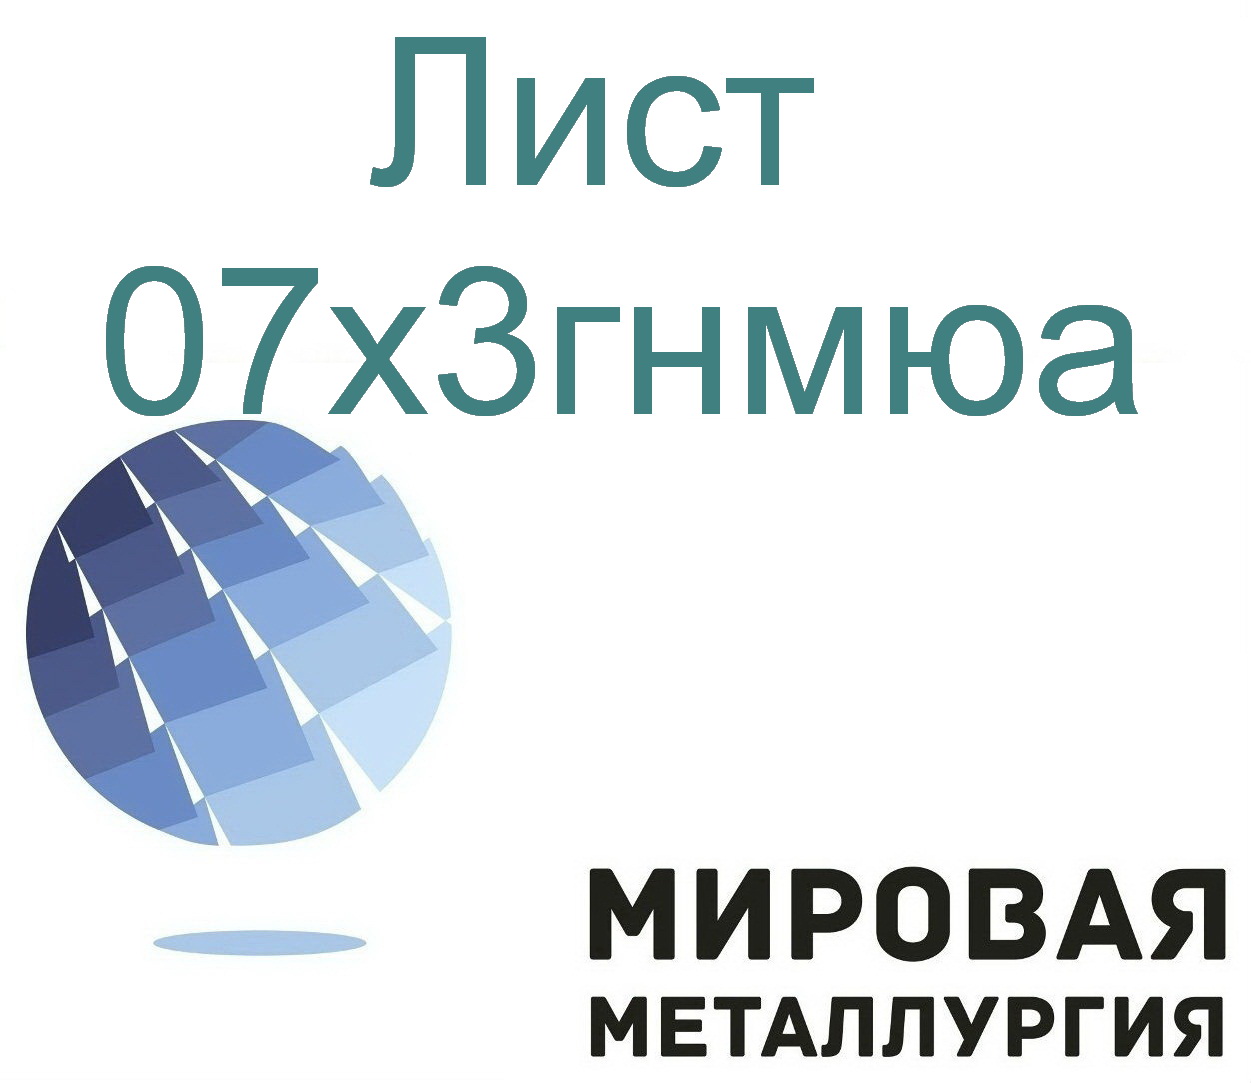 Сталь листовая и круглая 07х3гнмюа в городе Екатеринбург, фото 1, телефон продавца: +7 (343) 202-21-64